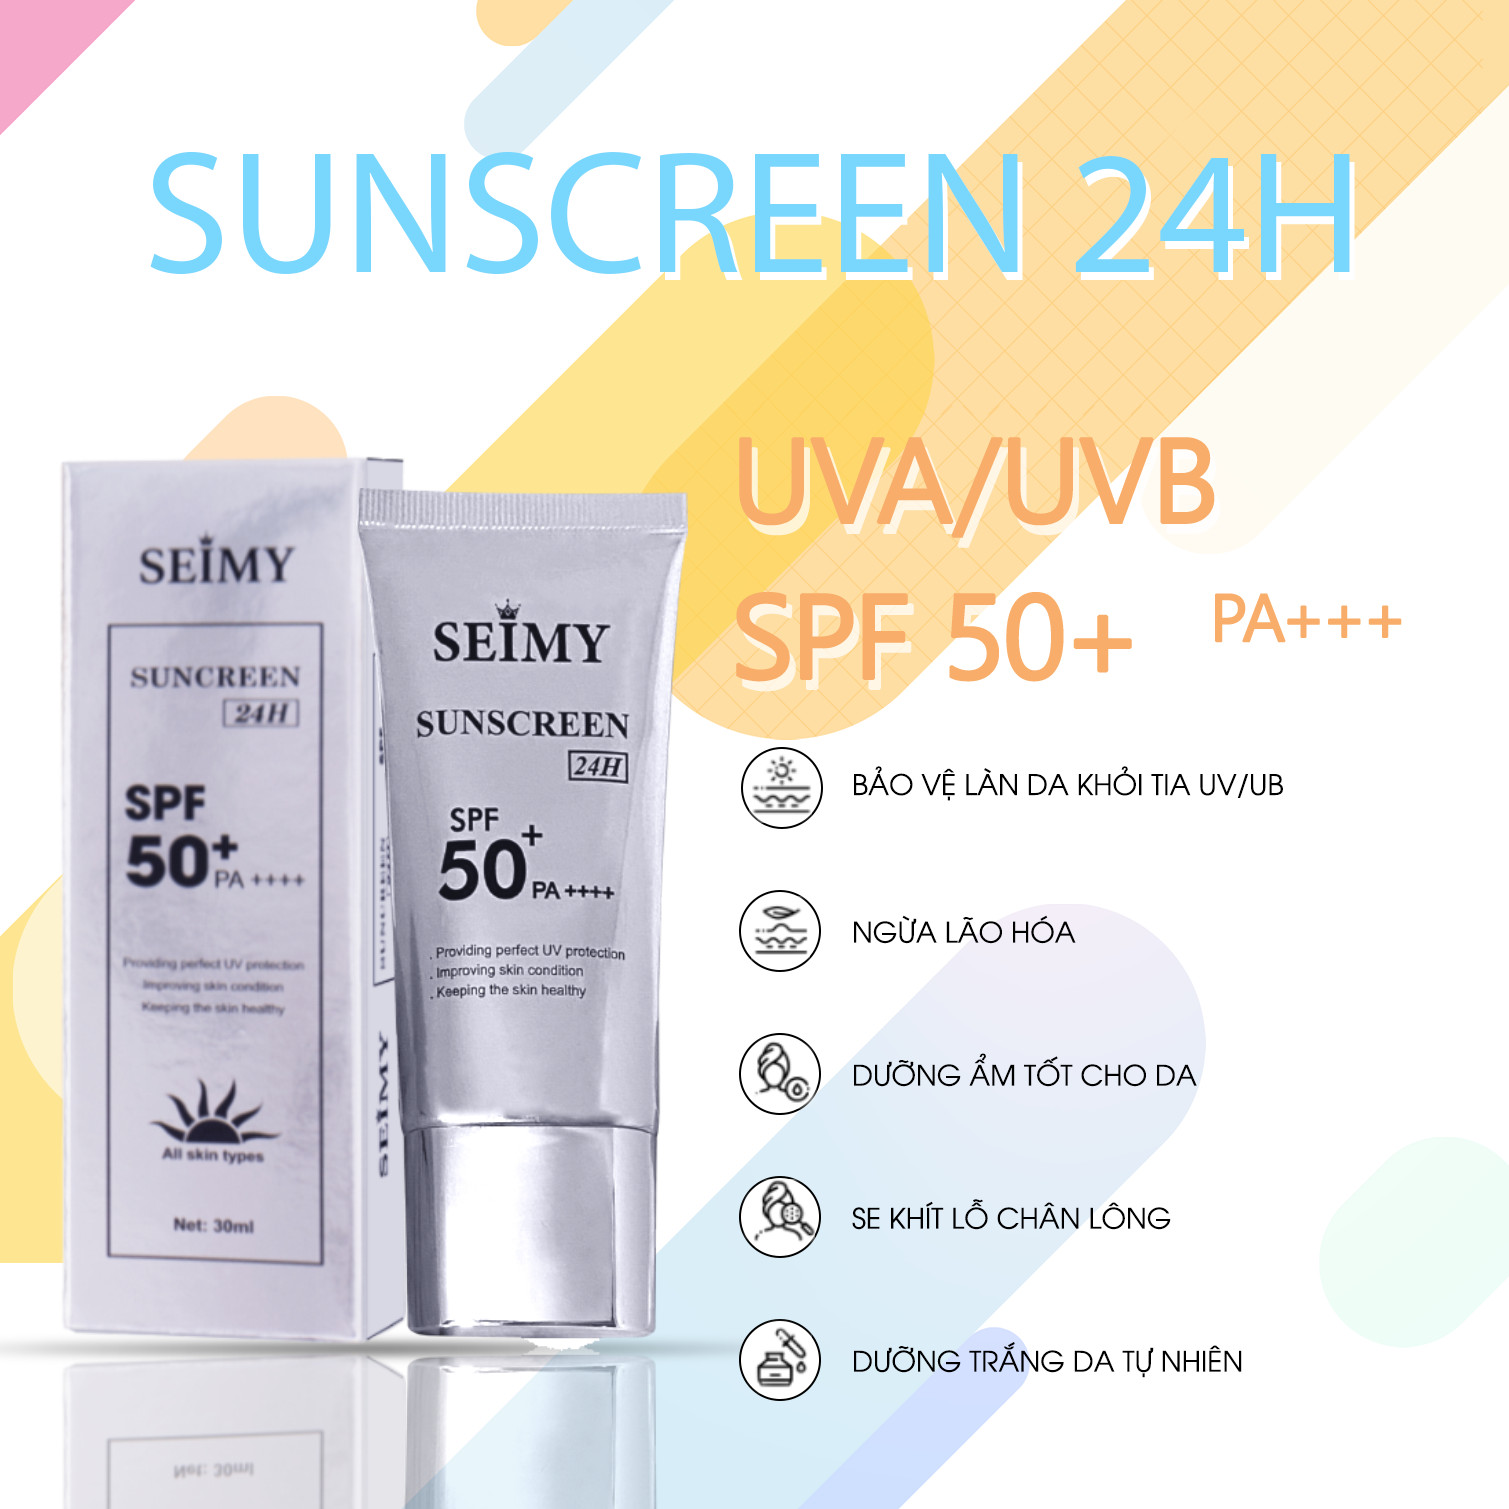 Kem dưỡng da chống nắng dưỡng trắng Seimy - Sunscreen 24h